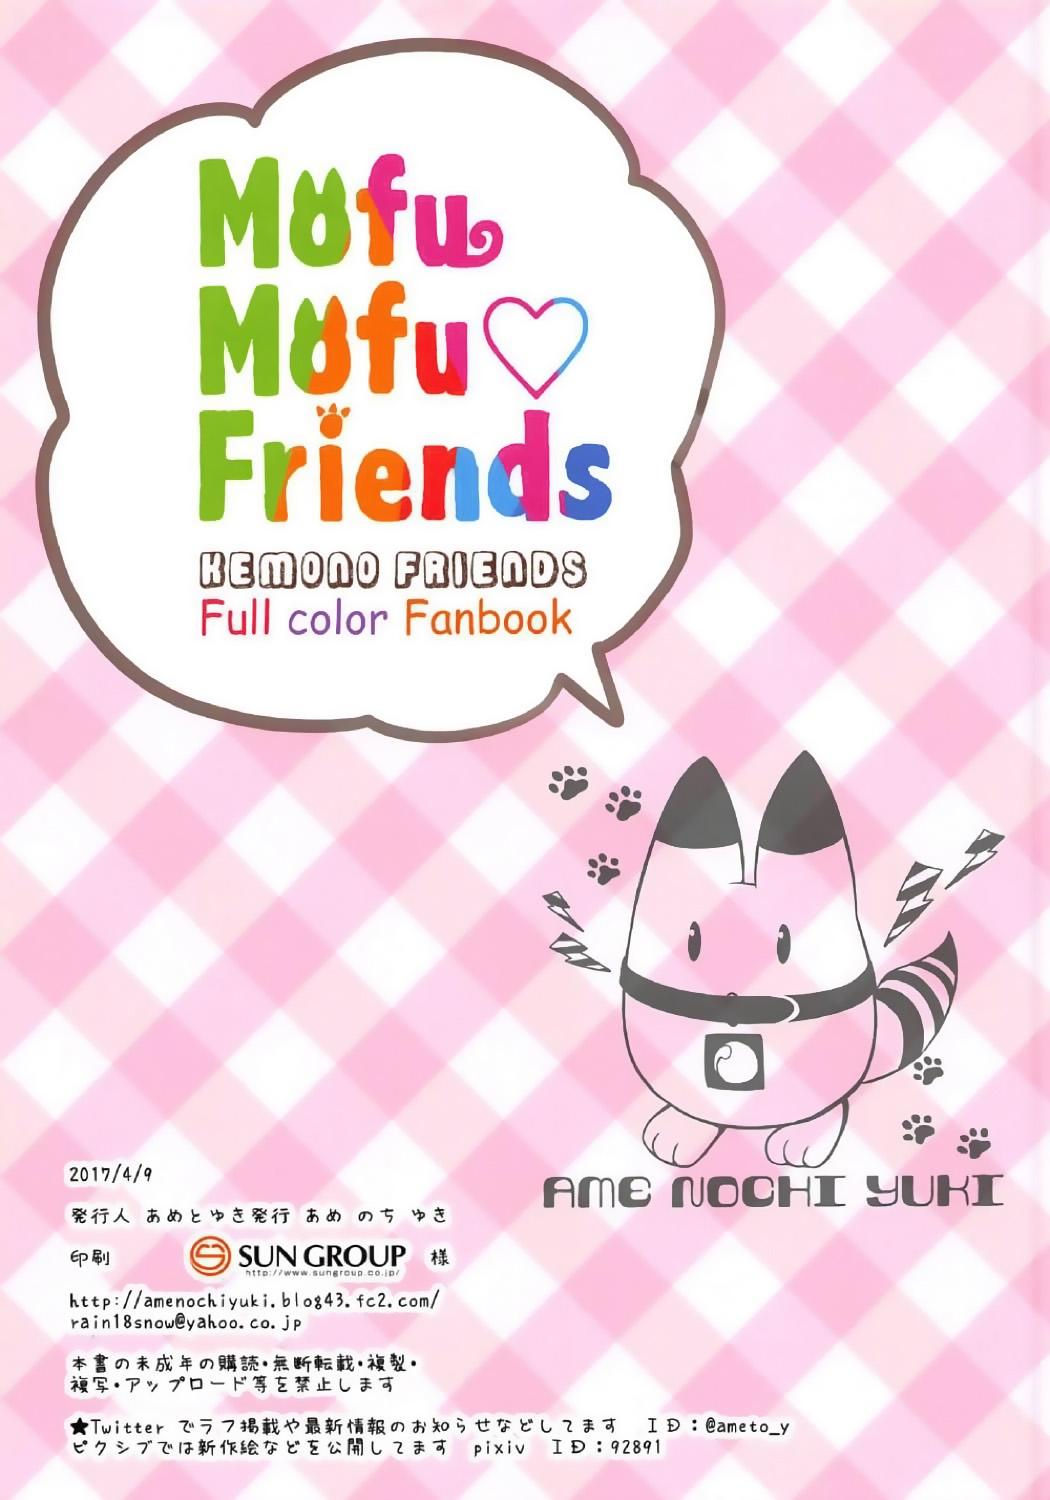 Mofu Mofu Friends 15